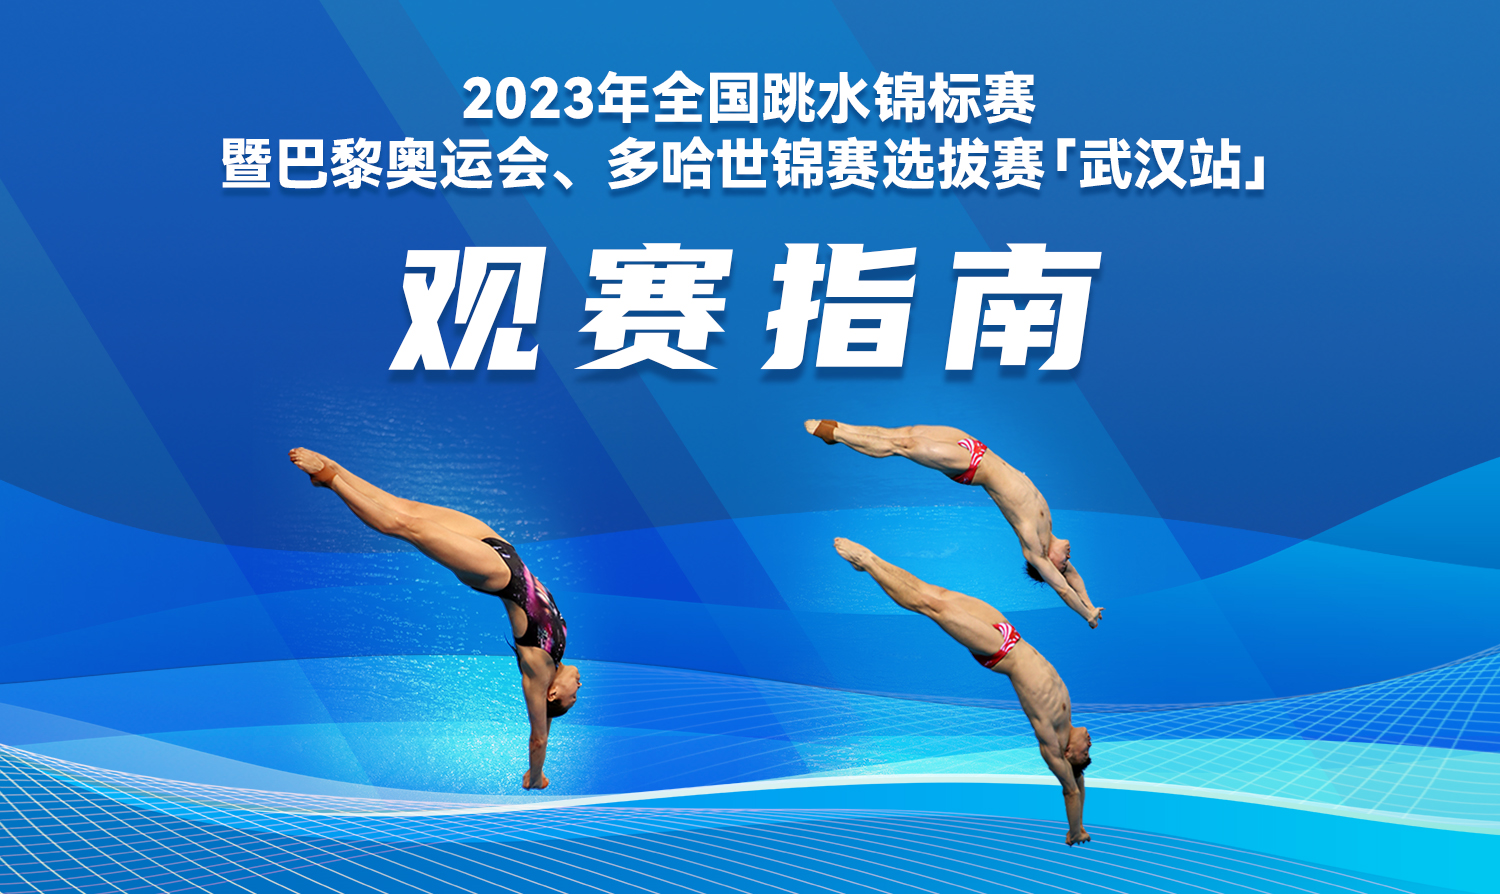 【觀賽指南】2023全國跳水錦標賽暨巴黎奧運會、多哈世錦賽選拔賽